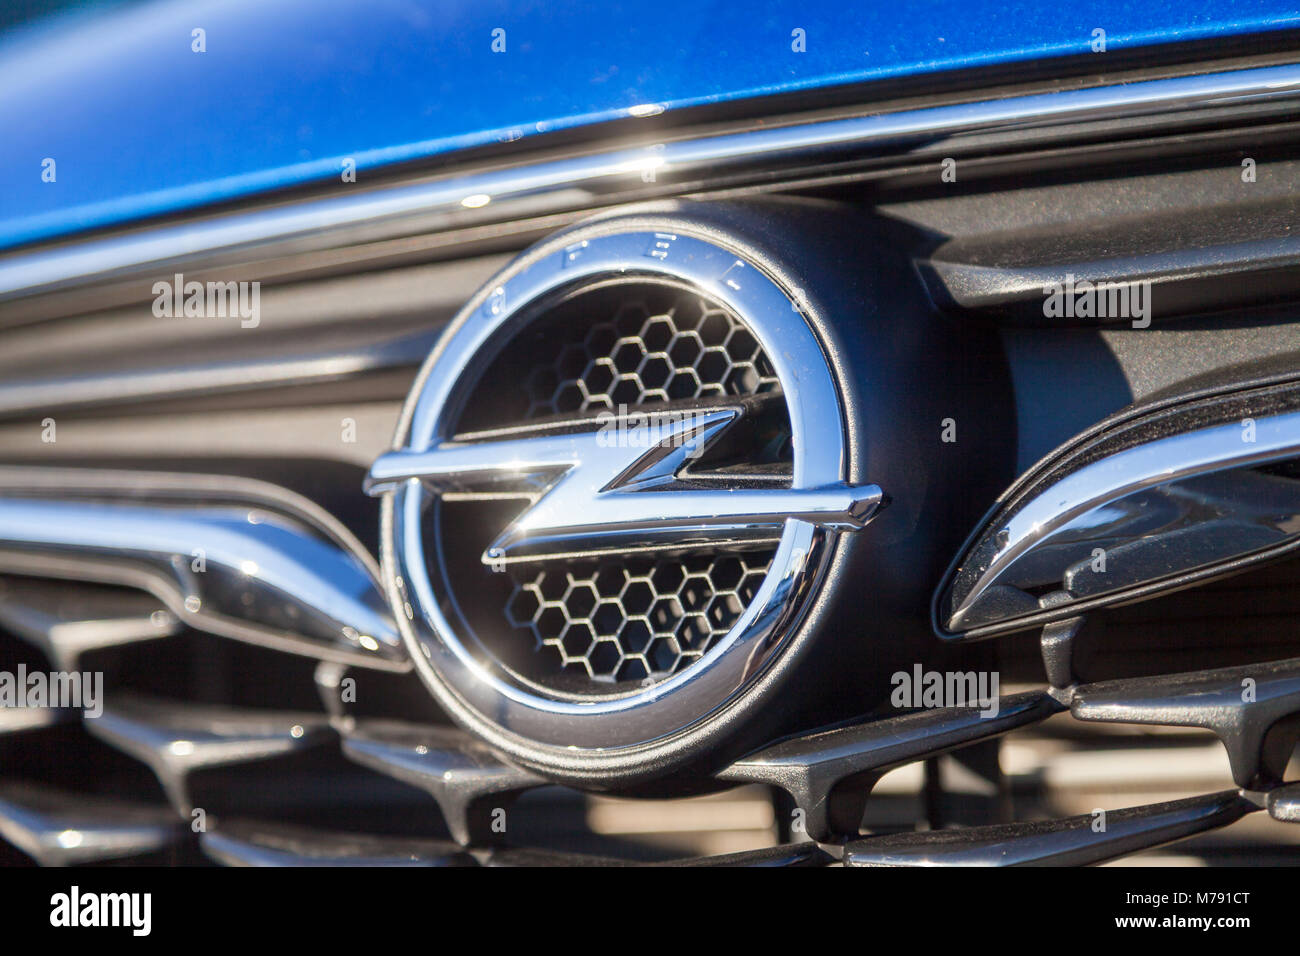 Tarnow, Polen - 28. Oktober 2017: Neue Opel Emblem auf einem Auto Grill.  Opel ist ein berühmter Deutscher Automobilhersteller, entwirft, produziert  und distrib Stockfotografie - Alamy